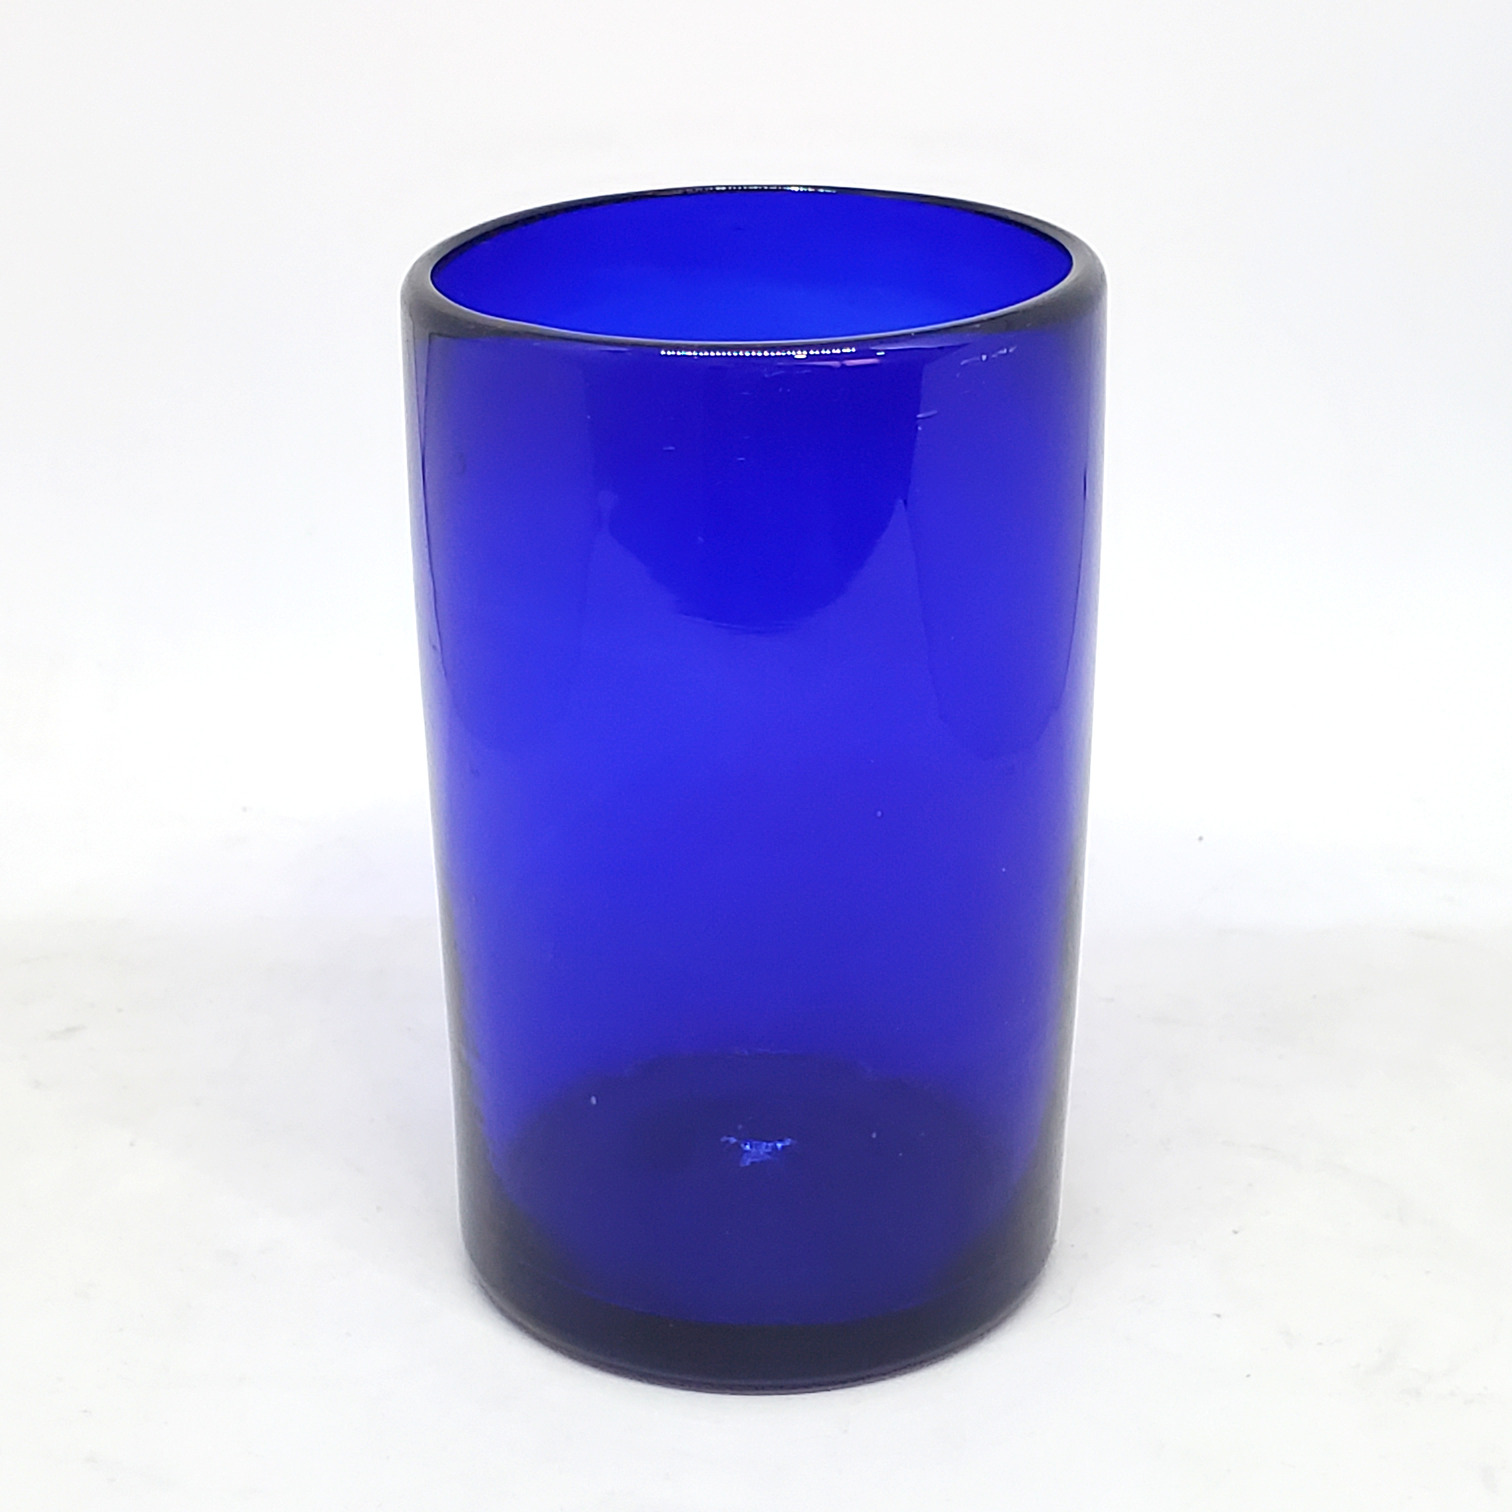 Ofertas / vasos grandes color azul cobalto / �stos artesanales vasos le dar�n un toque cl�sico a su bebida favorita.